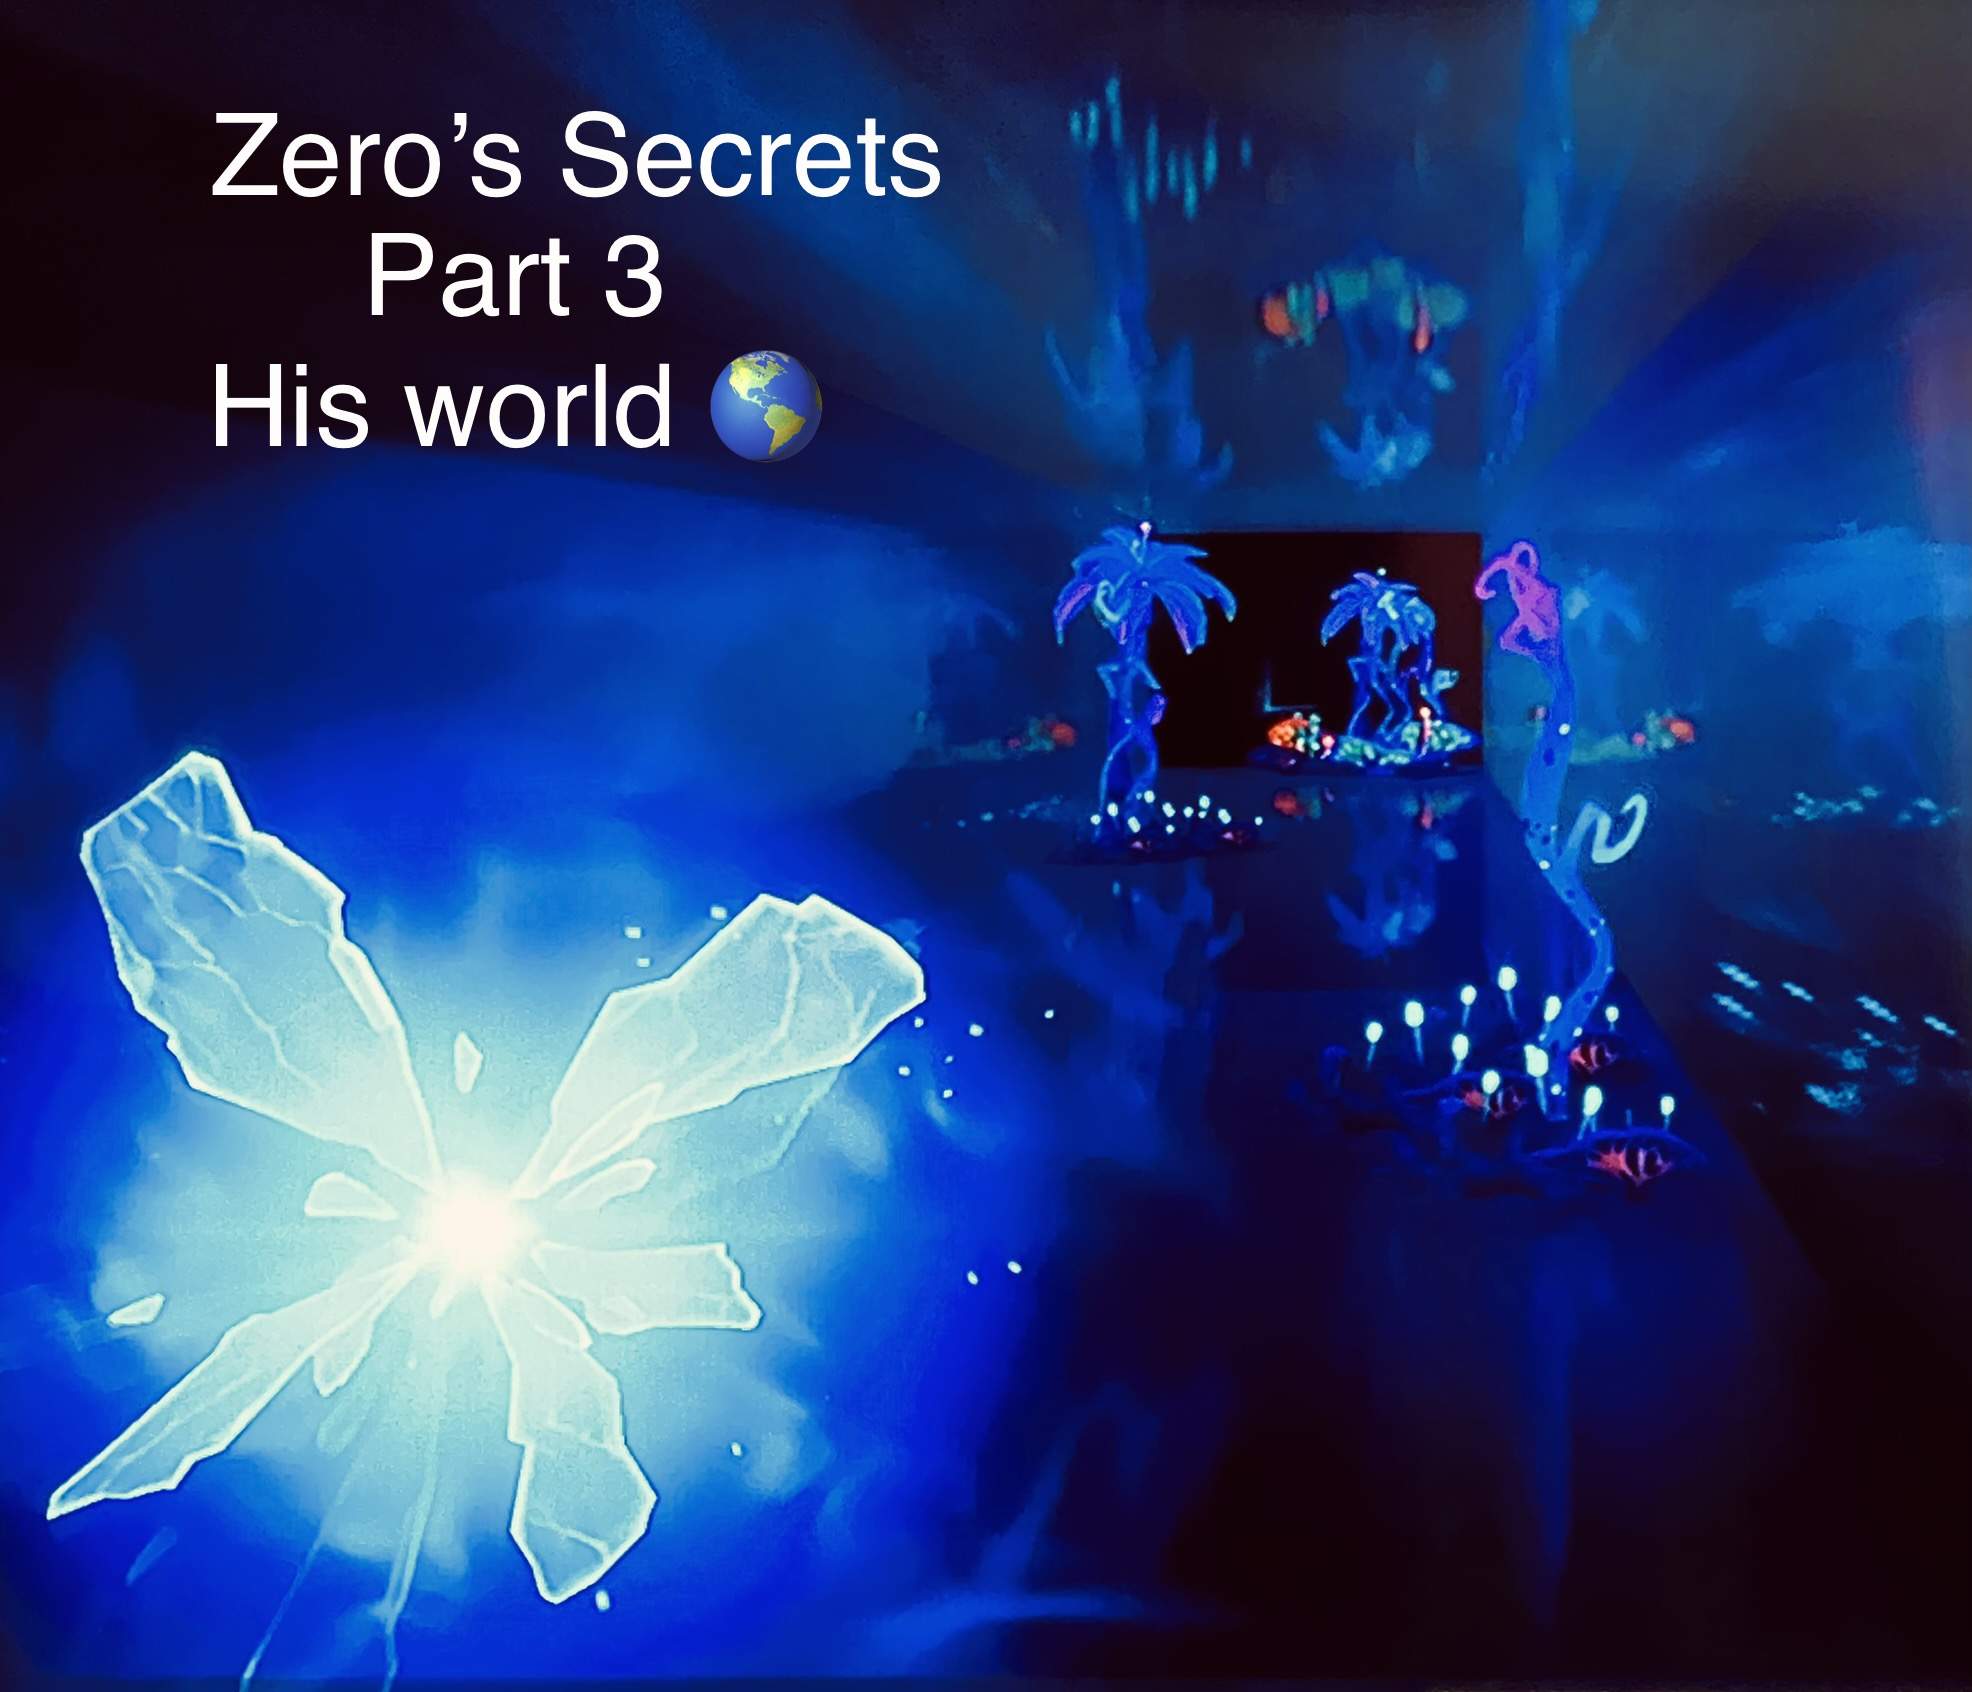 ZERO'S SECRETS PART 3 - ZERO'S WORLD